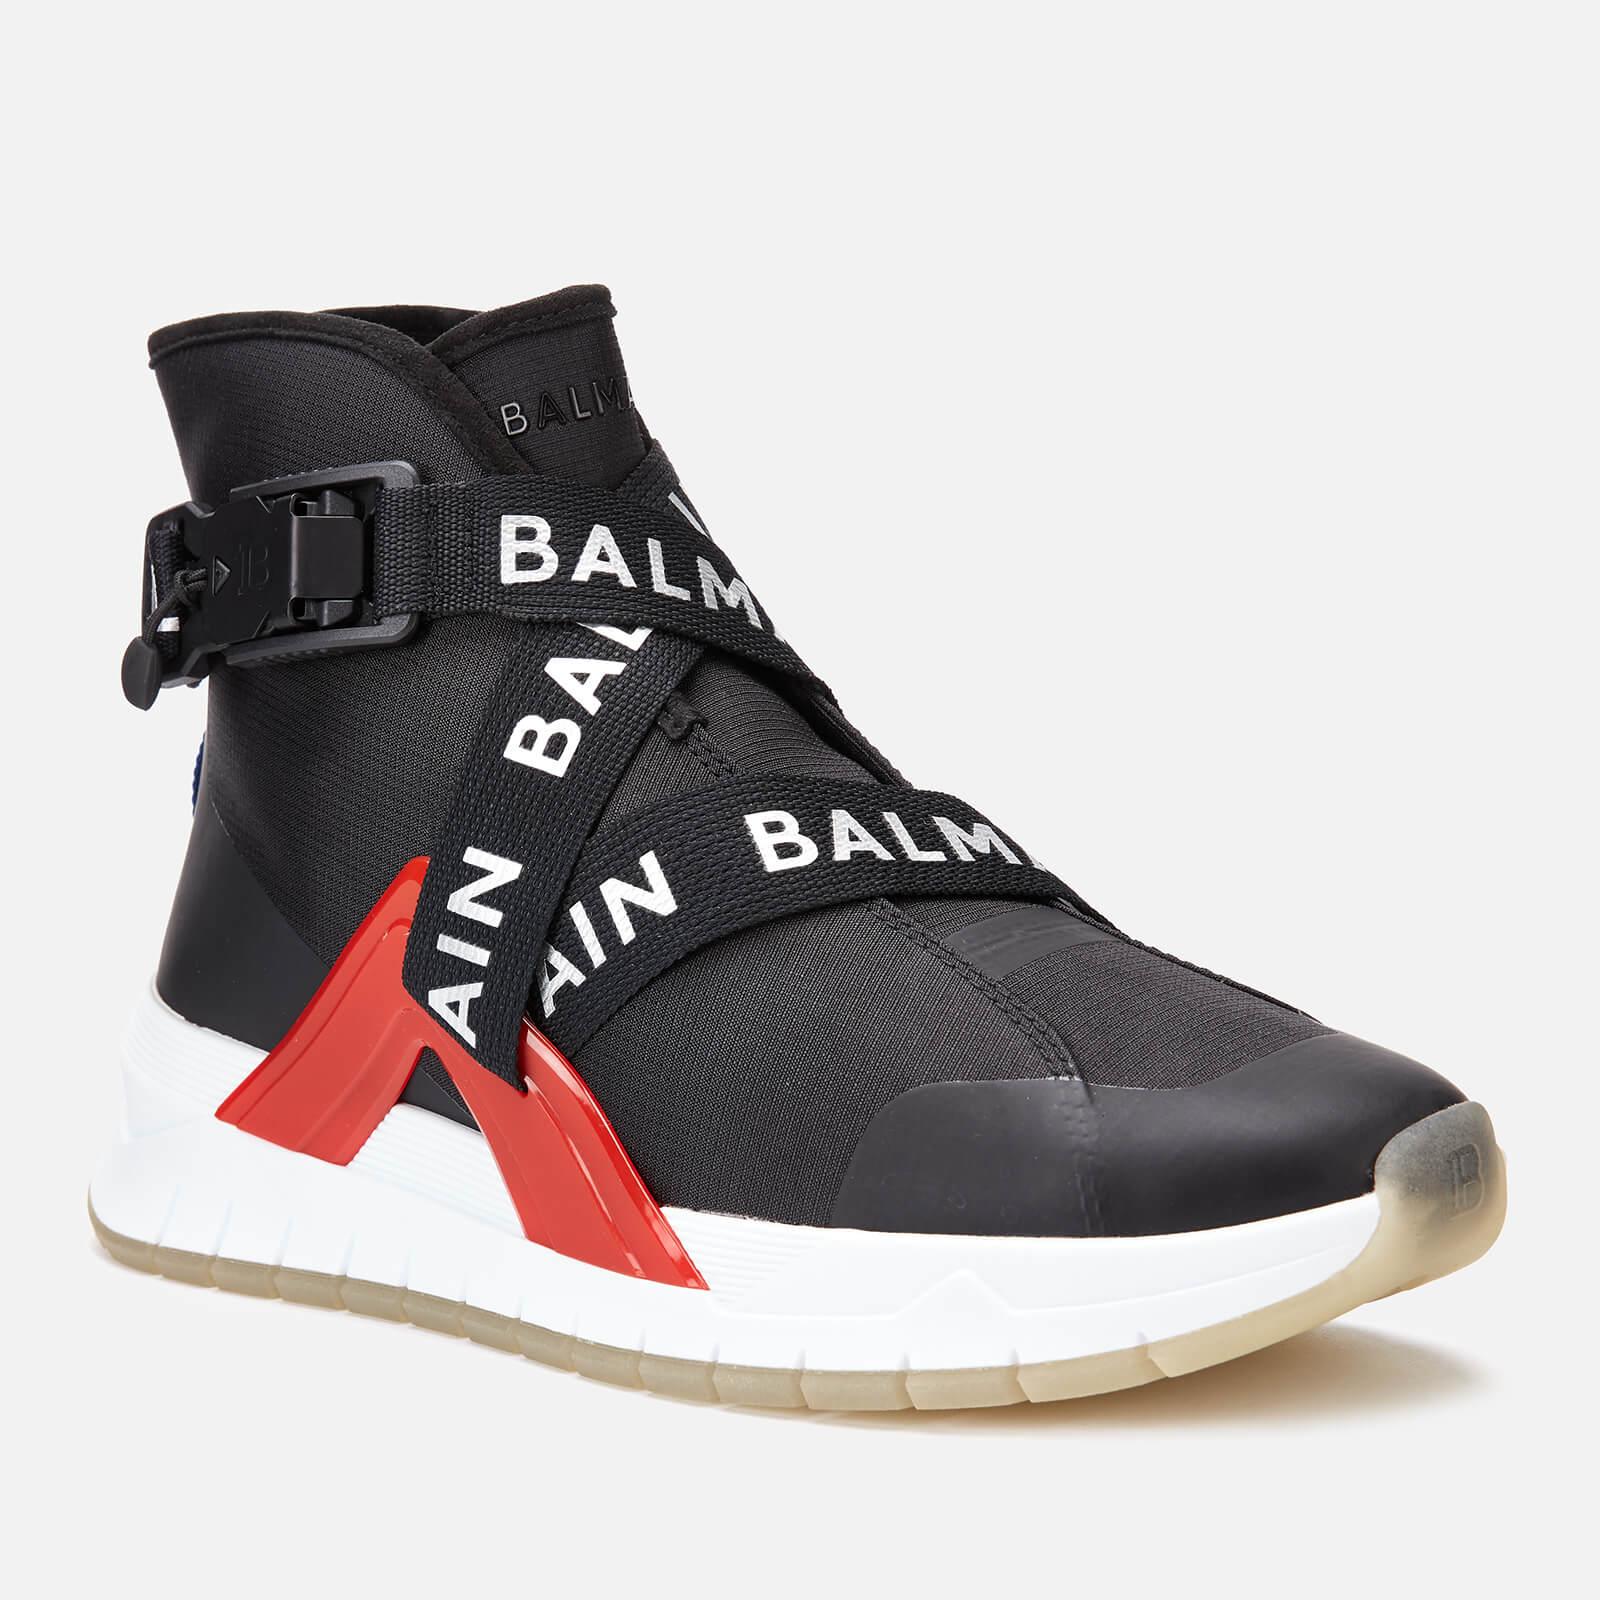 Balmain 'troop' Sneakers in Black for Men - Lyst